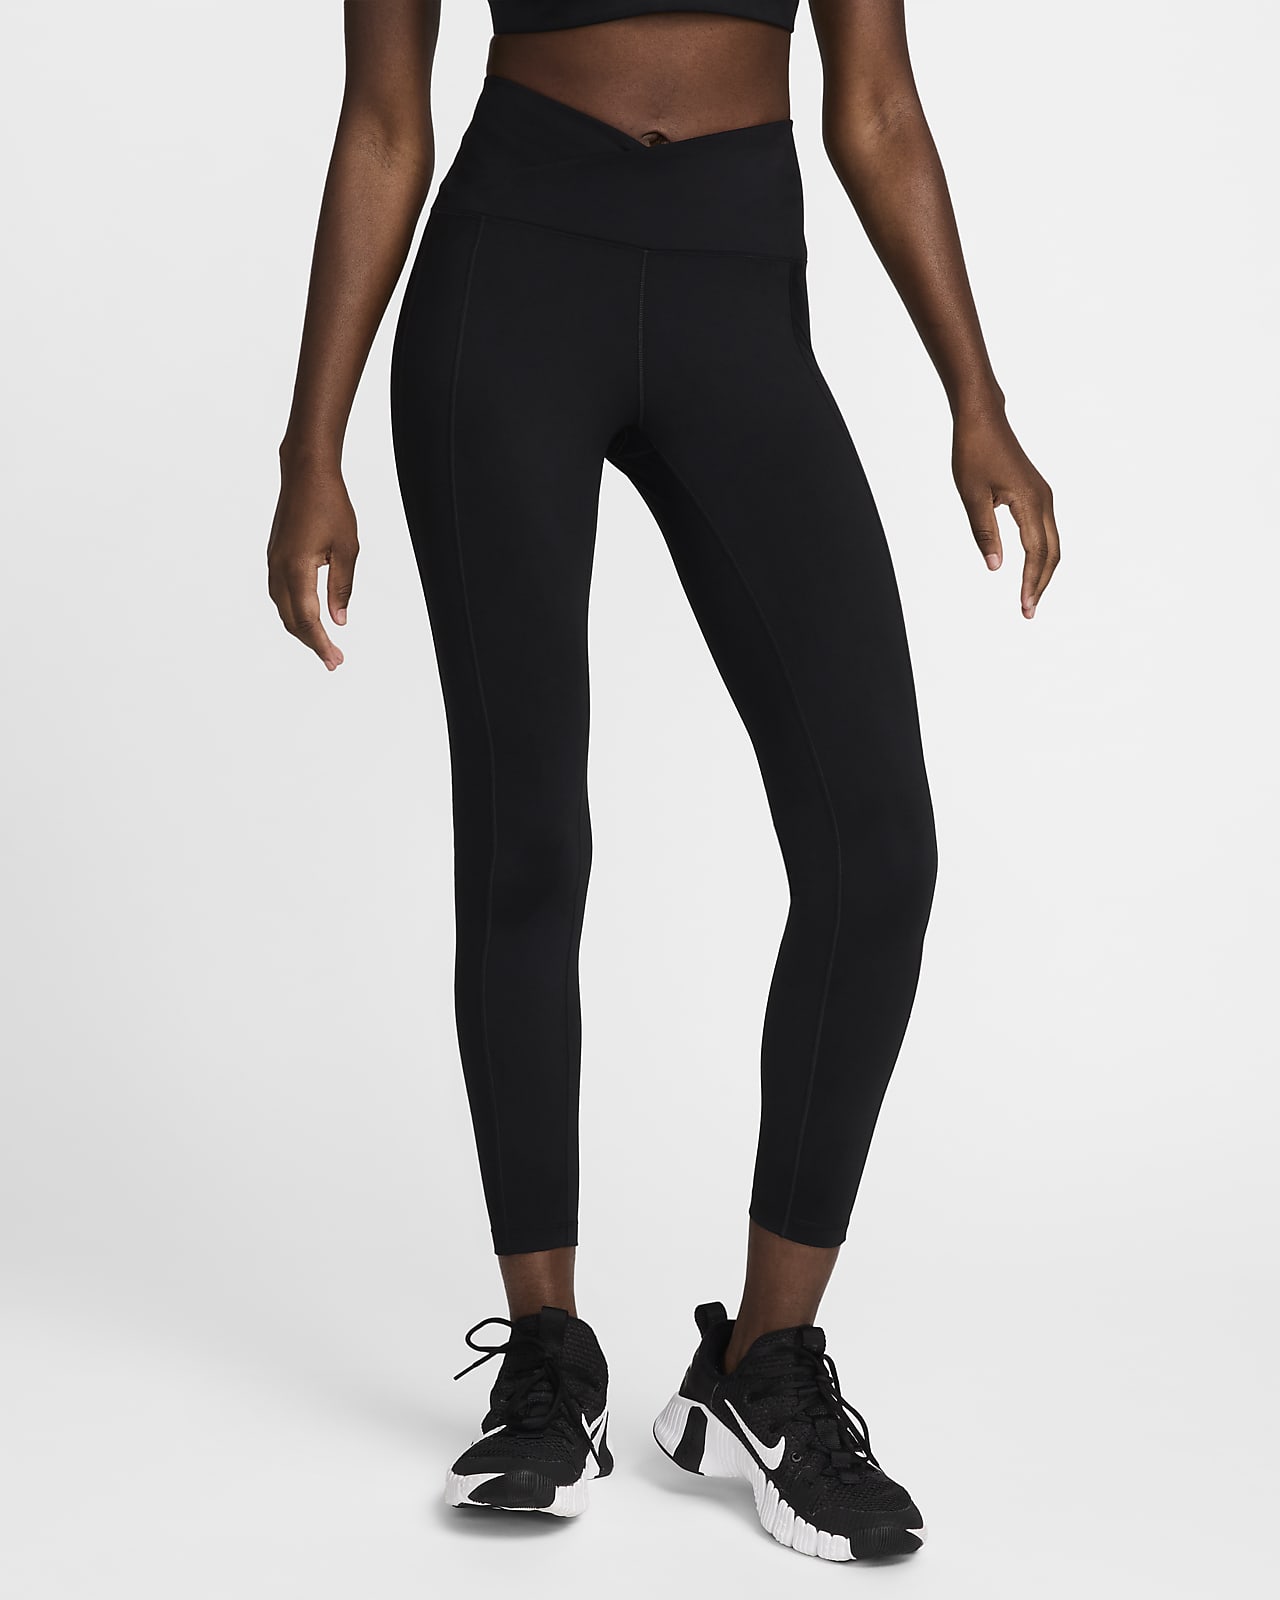 Nike One Wrap Leggings de 7/8 de talle alto - Mujer